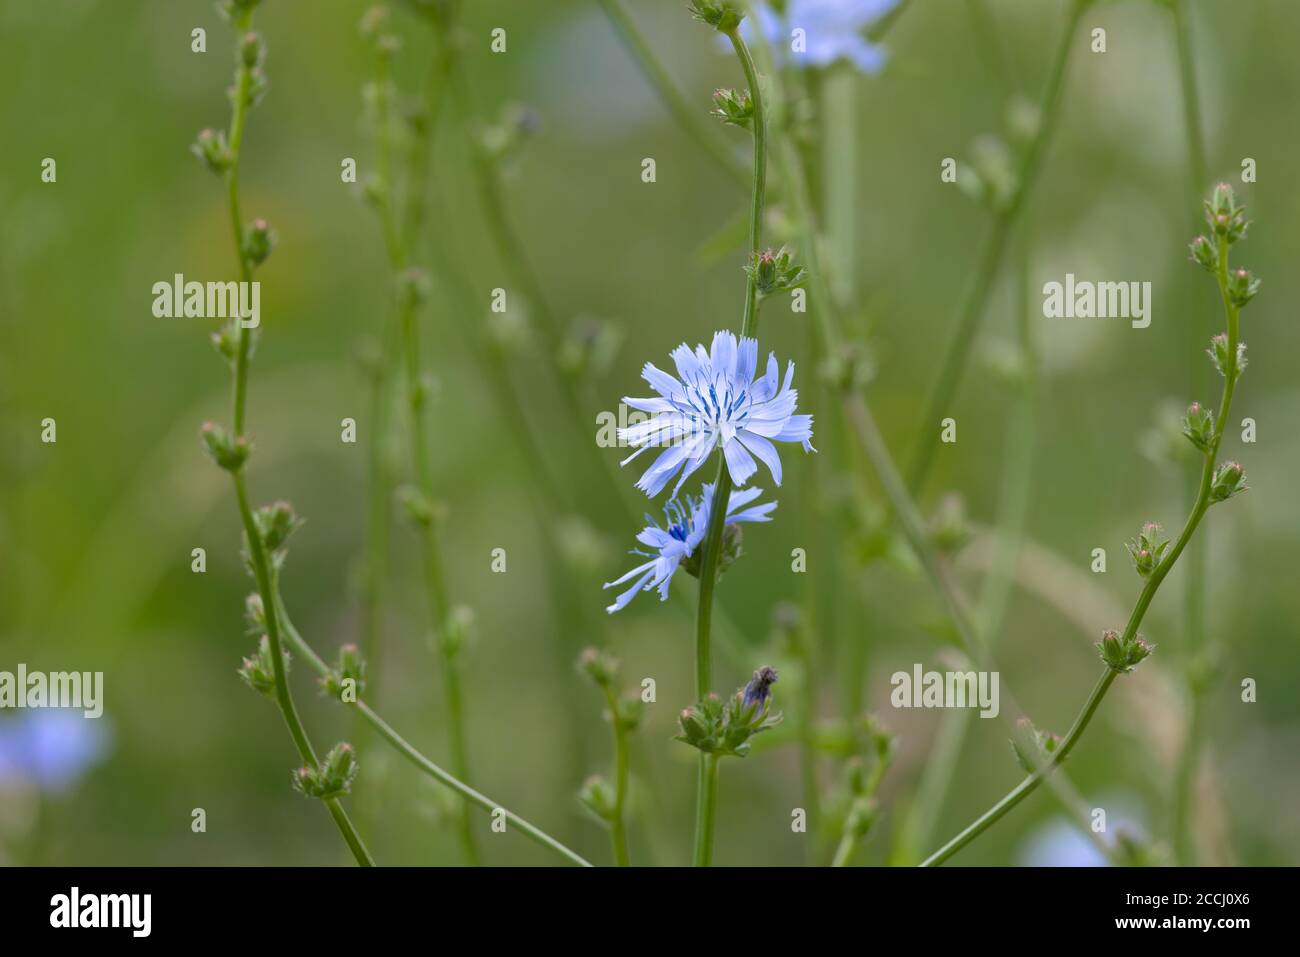 6 - leuchtend weiße und blaue Blütenblätter einer Zichorien-Pflanzenblume. Glatter grüner Hintergrund durch selektive Fokusmethode. Wildwiesenstruktur. Stockfoto